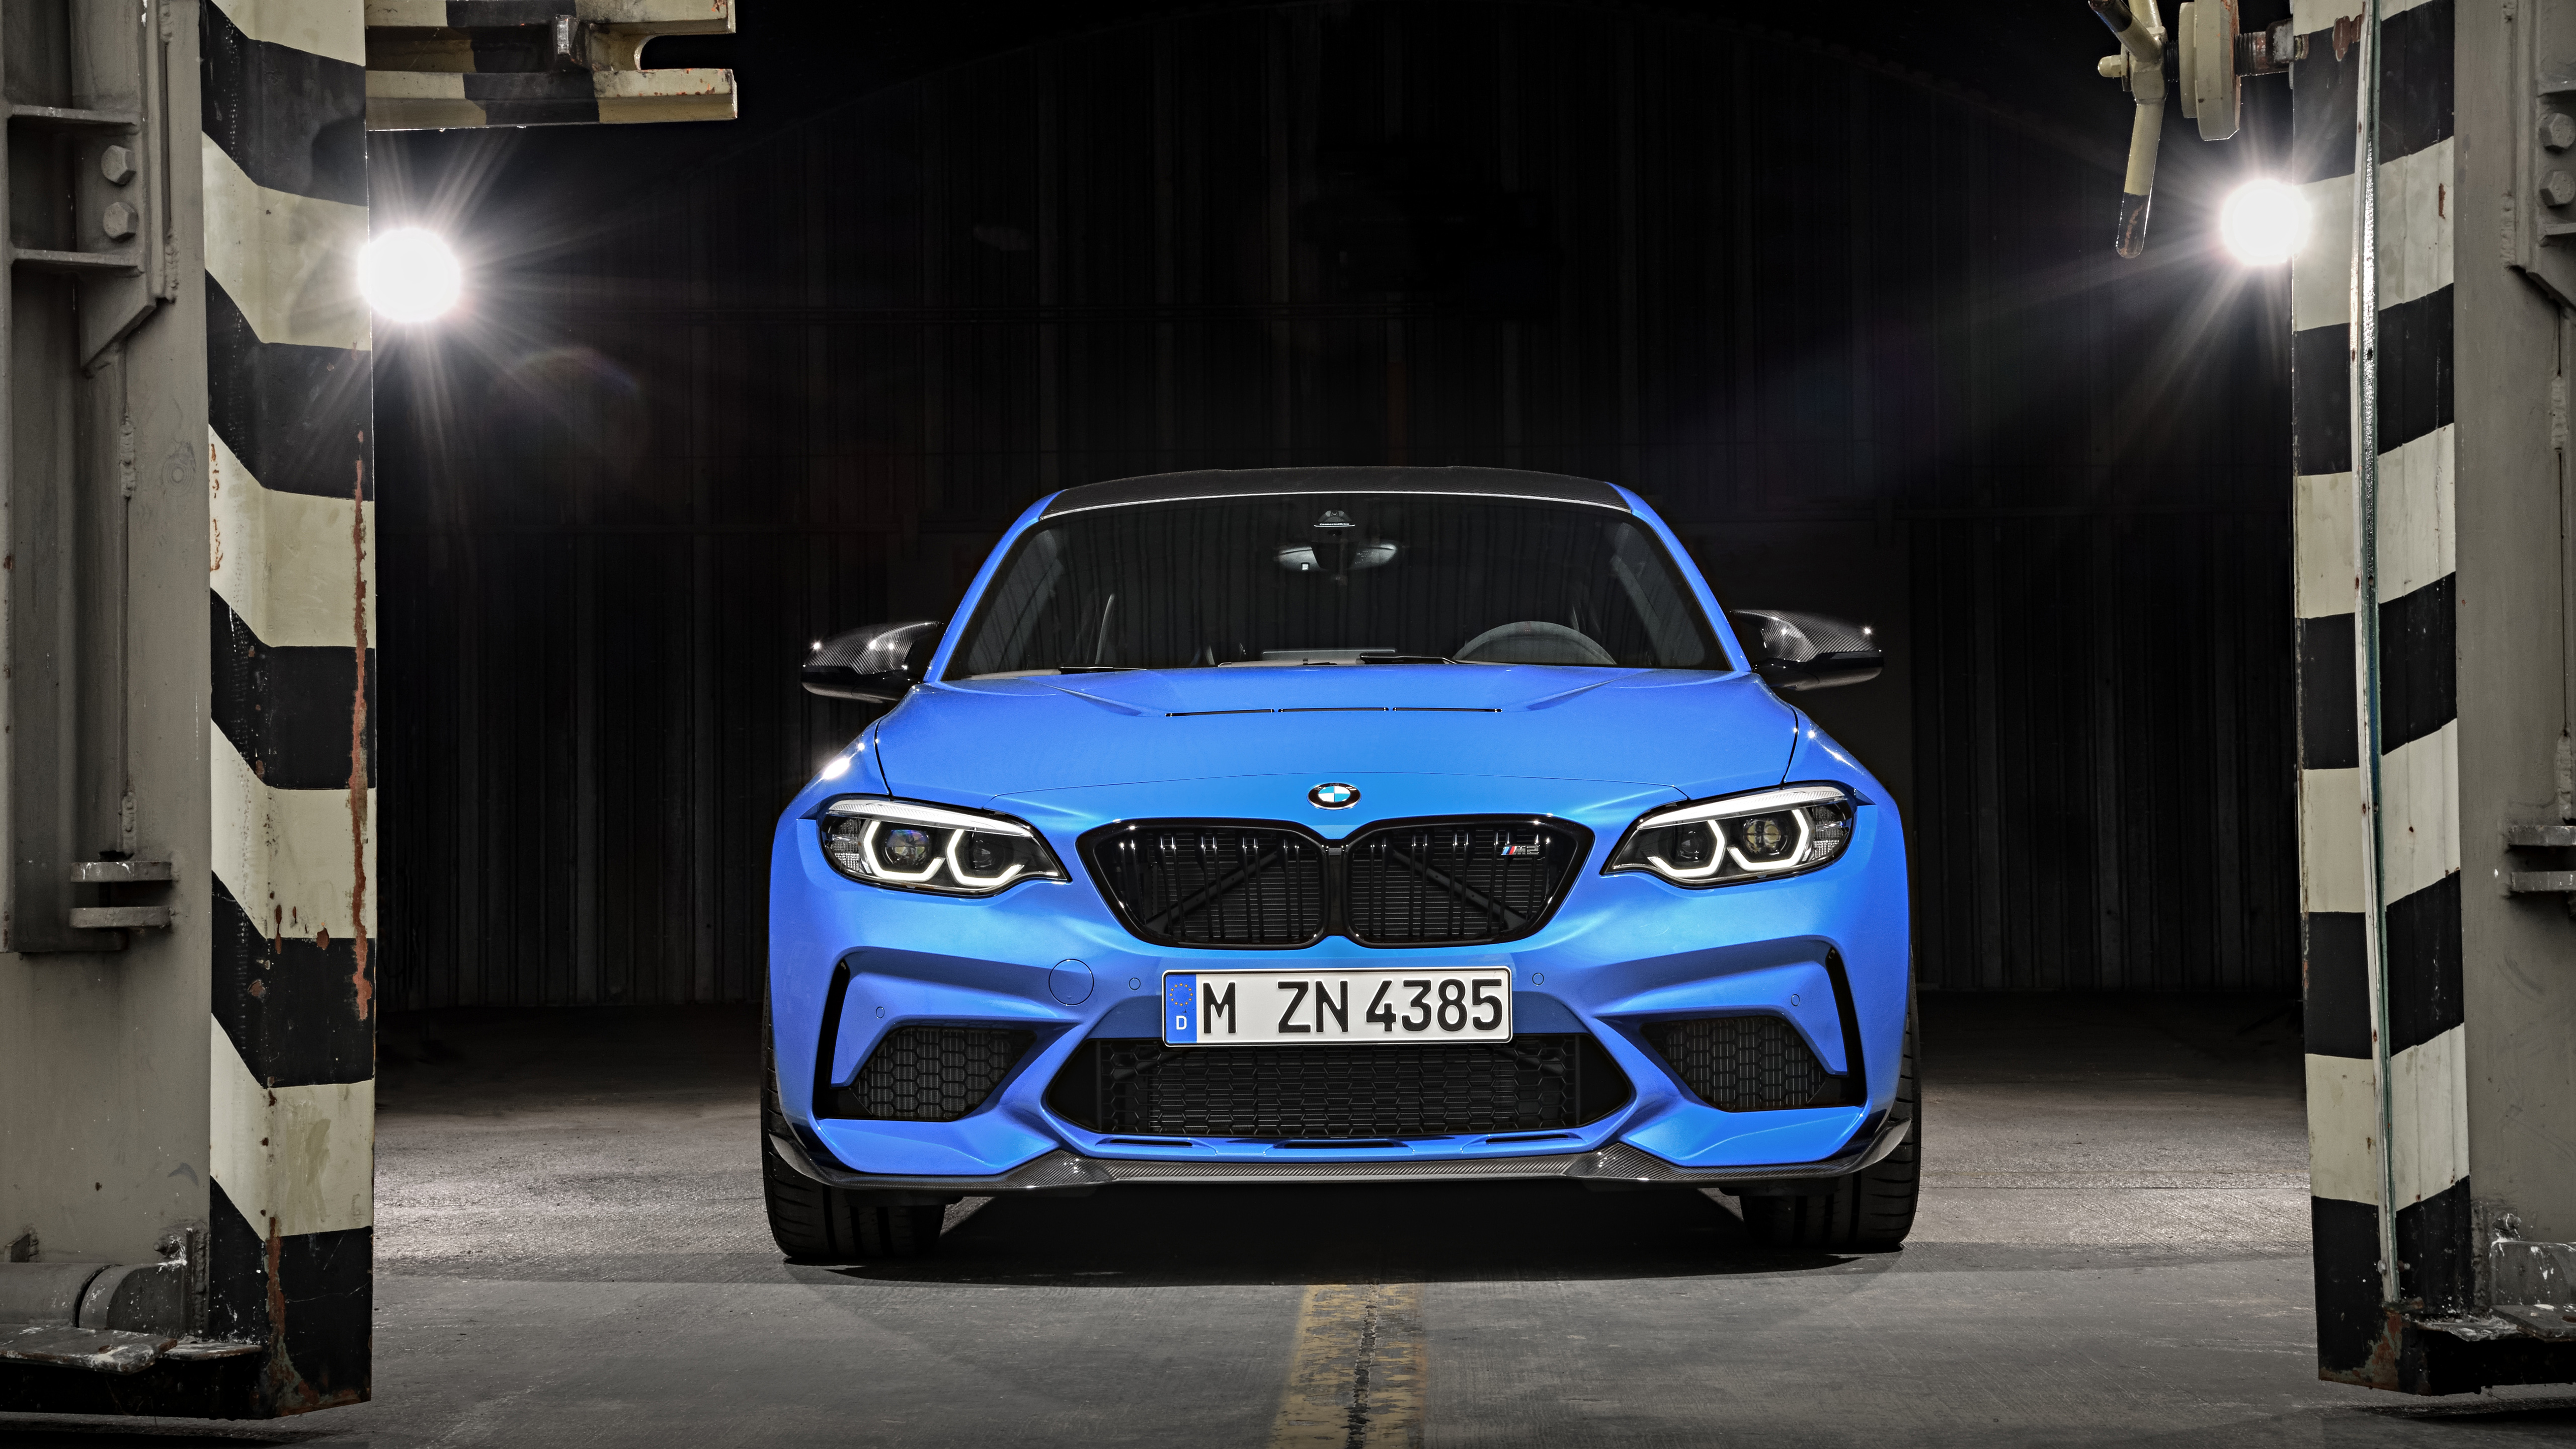 BMW M2 CS 2019 4K Wallpaper HD Car Wallpapers ID 13652